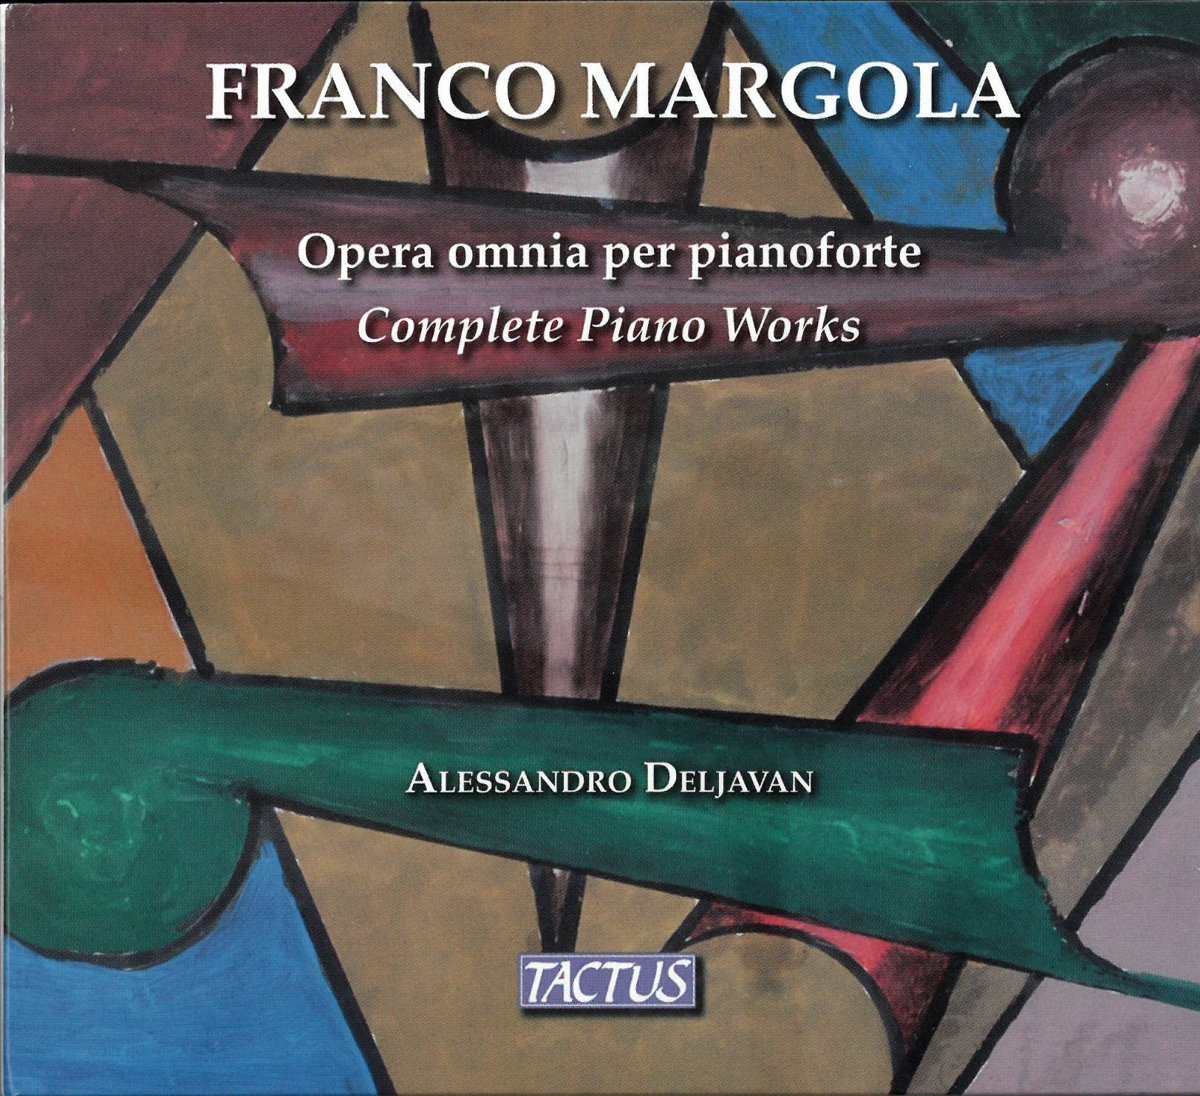 Audio Cd Franco Margola - Complete Piano Works (3 Cd) NUOVO SIGILLATO, EDIZIONE DEL 03/02/2018 SUBITO DISPONIBILE